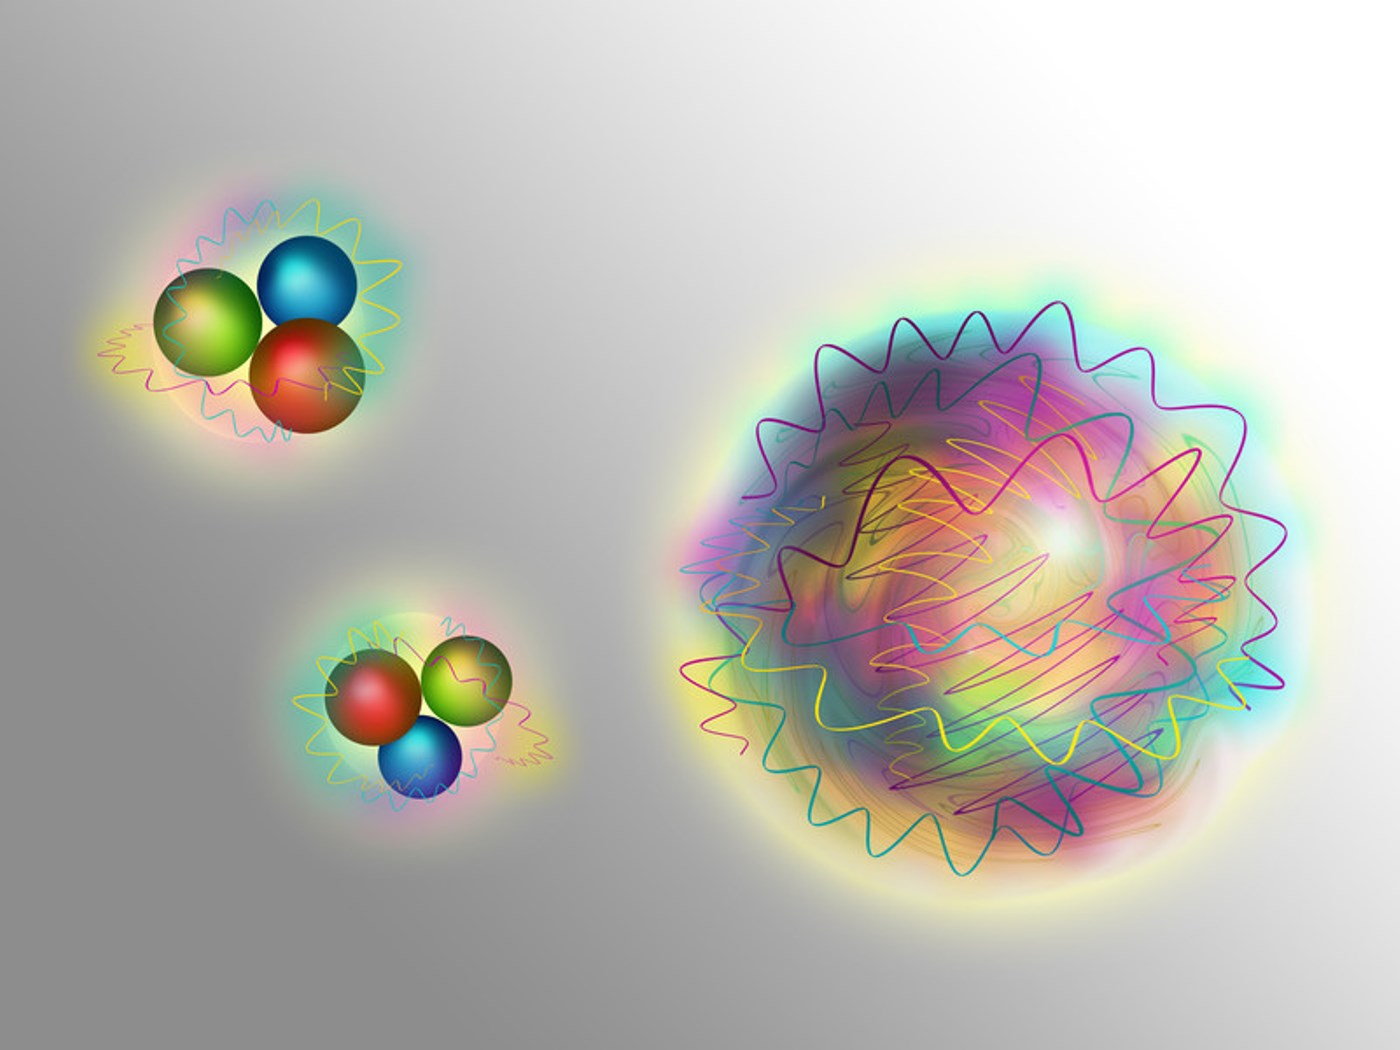 Les baryons sont composés de trois quarks (les boules colorées sur cette image d'artiste) liés par des cousins des photons décrivant la force nucléaire forte entre quarks, les gluons (représentés par des courbes ondulées). Mais ces gluons s'attirent aussi les uns les autres par cette même force, de sorte que l'on peut imaginer des particules faites uniquement de gluons : des boules de glu encore appelées glueballs en anglais. © TU Wien 